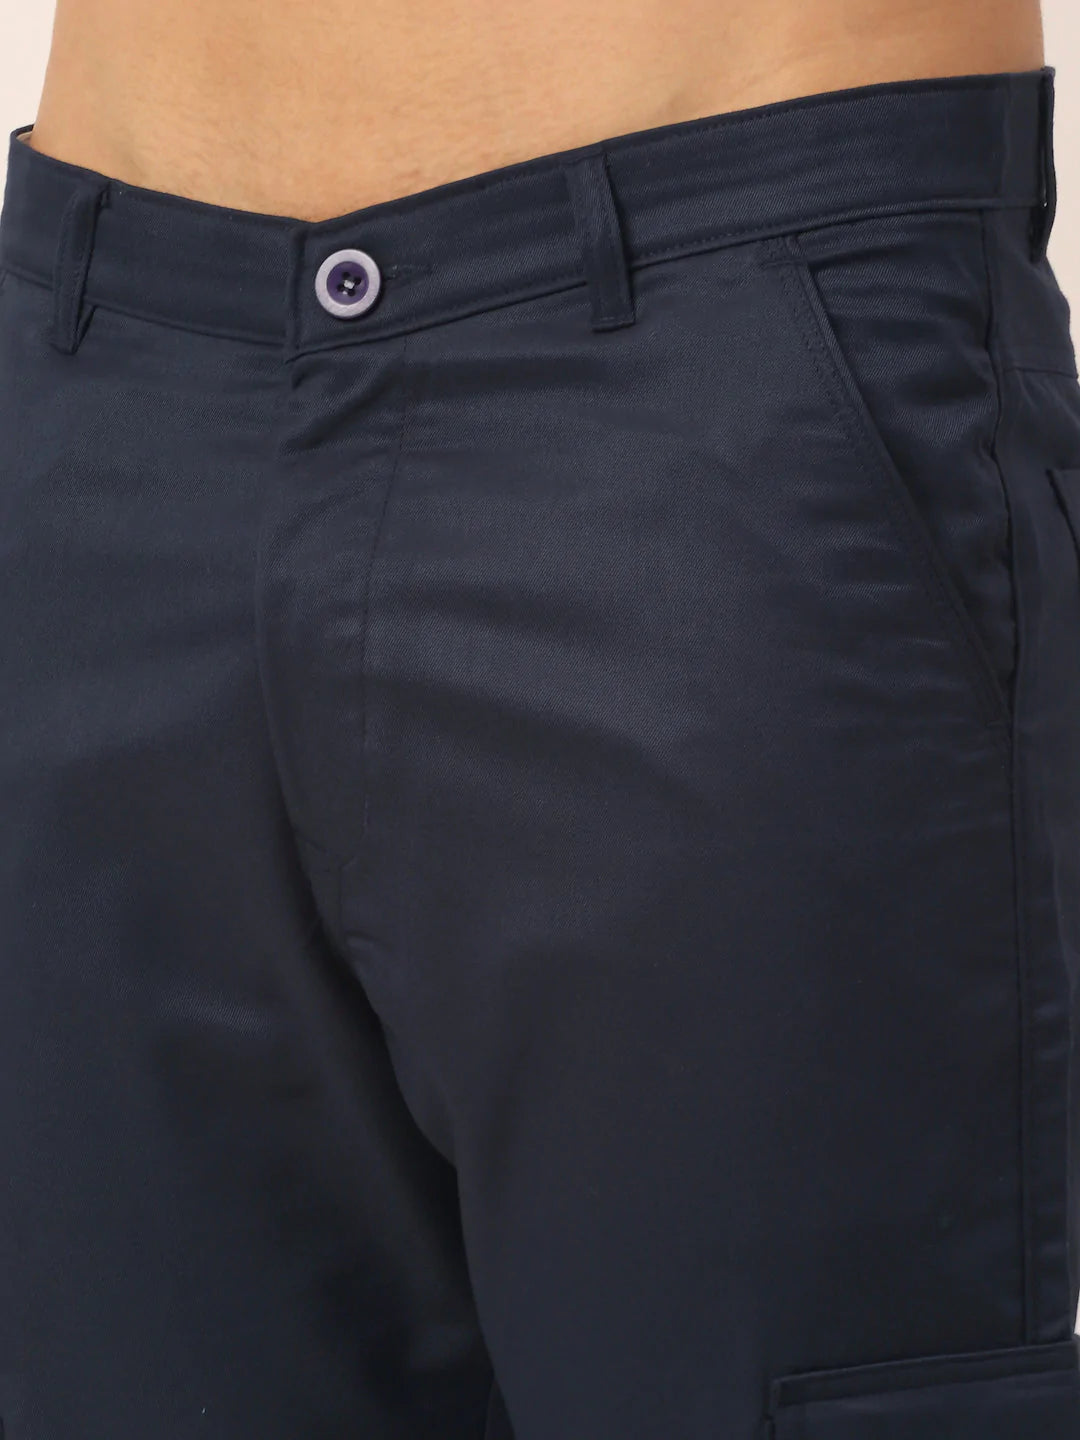 Jainish Men's Casual Cotton Solid Cargo Pants ( KGP 154 Navy-Blue )